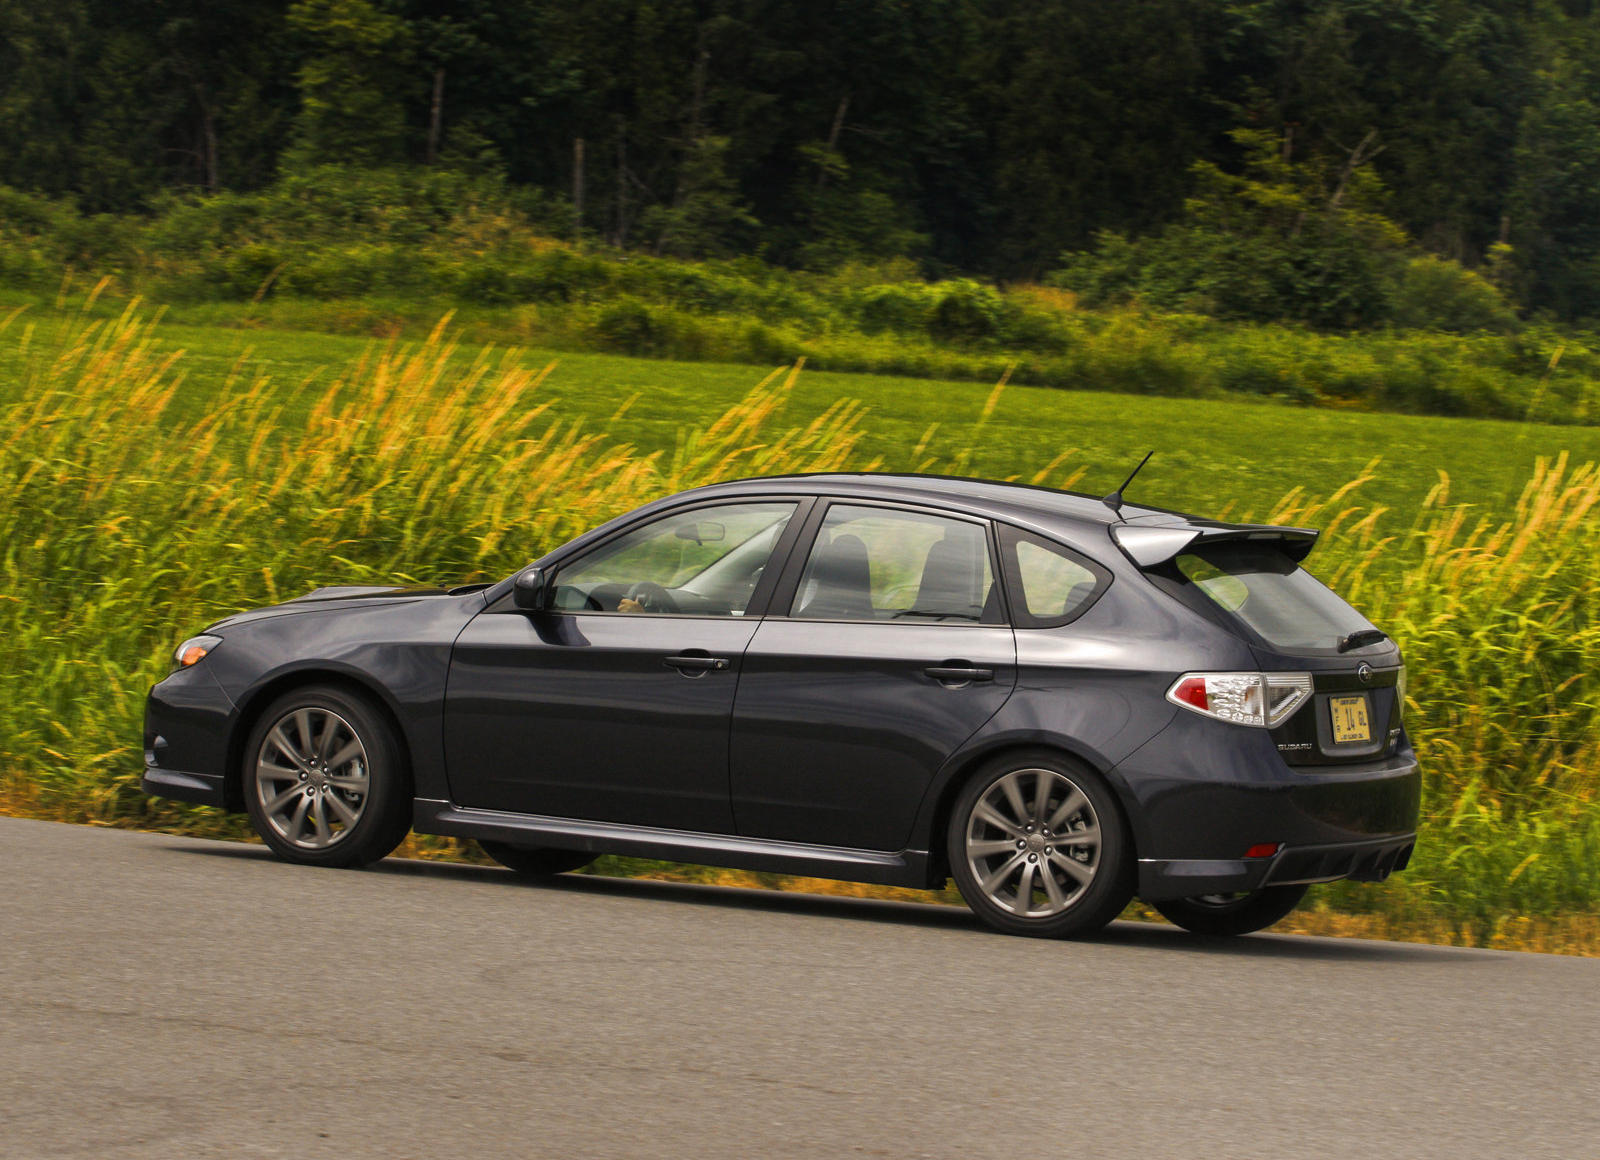 2009 Subaru Impreza WRX Hatchback: Review, Trims, Specs, Price, New